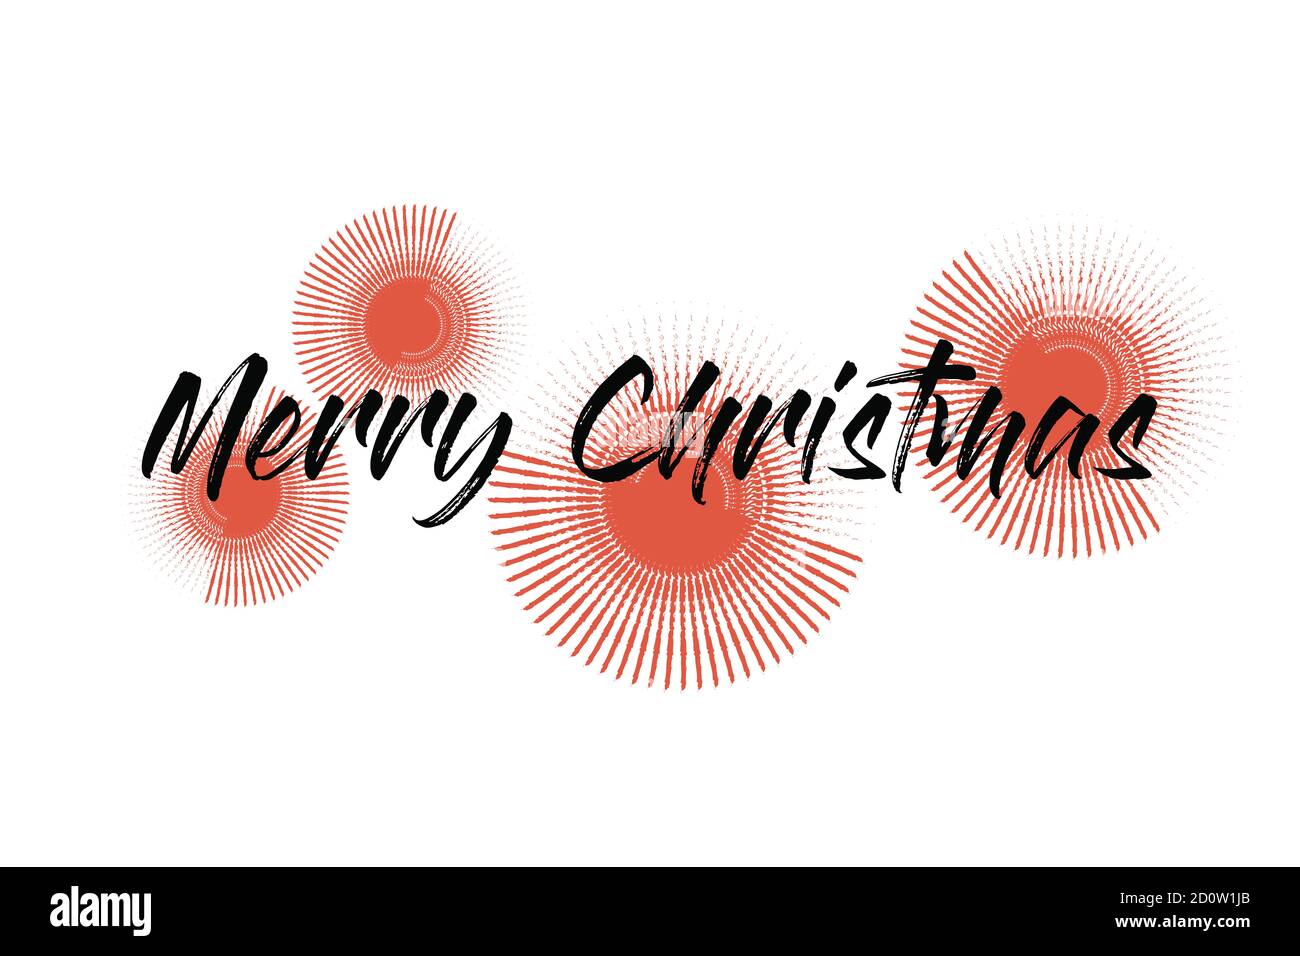 Verspielte grafische Gestaltung eines Sprichwort "Merry Christmas" mit wiederholten Linien bilden Kreise in Schneeflocken Abstraktion in roten und schwarzen Farben. Handwritte Stockfoto